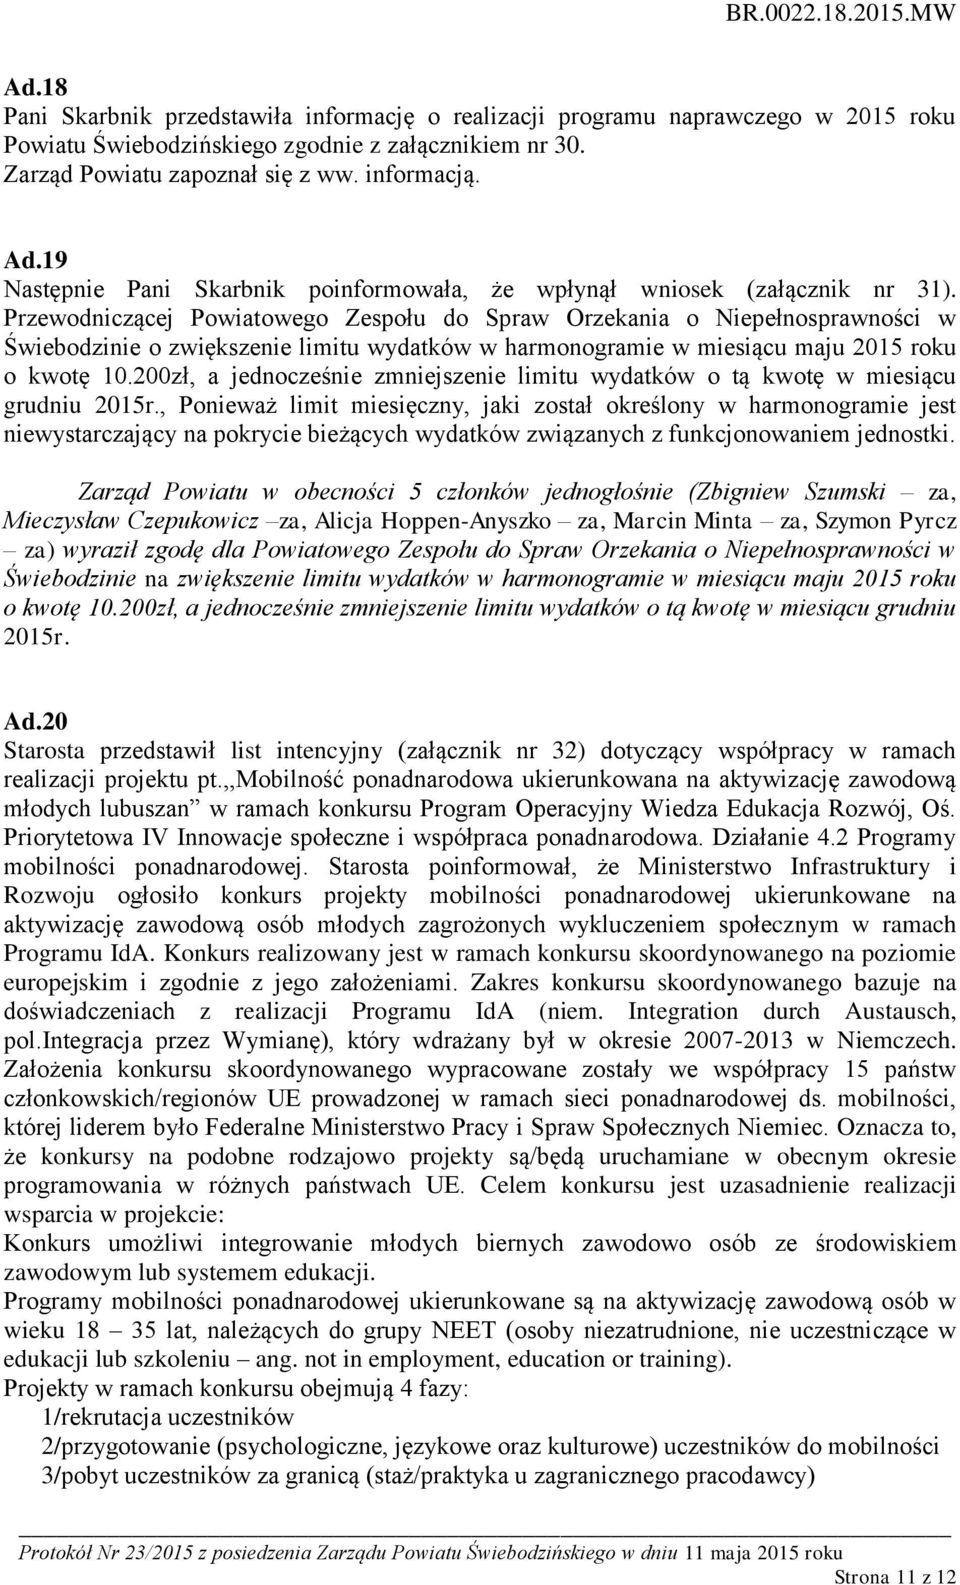 Przewodniczącej Powiatowego Zespołu do Spraw Orzekania o Niepełnosprawności w Świebodzinie o zwiększenie limitu wydatków w harmonogramie w miesiącu maju 2015 roku o kwotę 10.